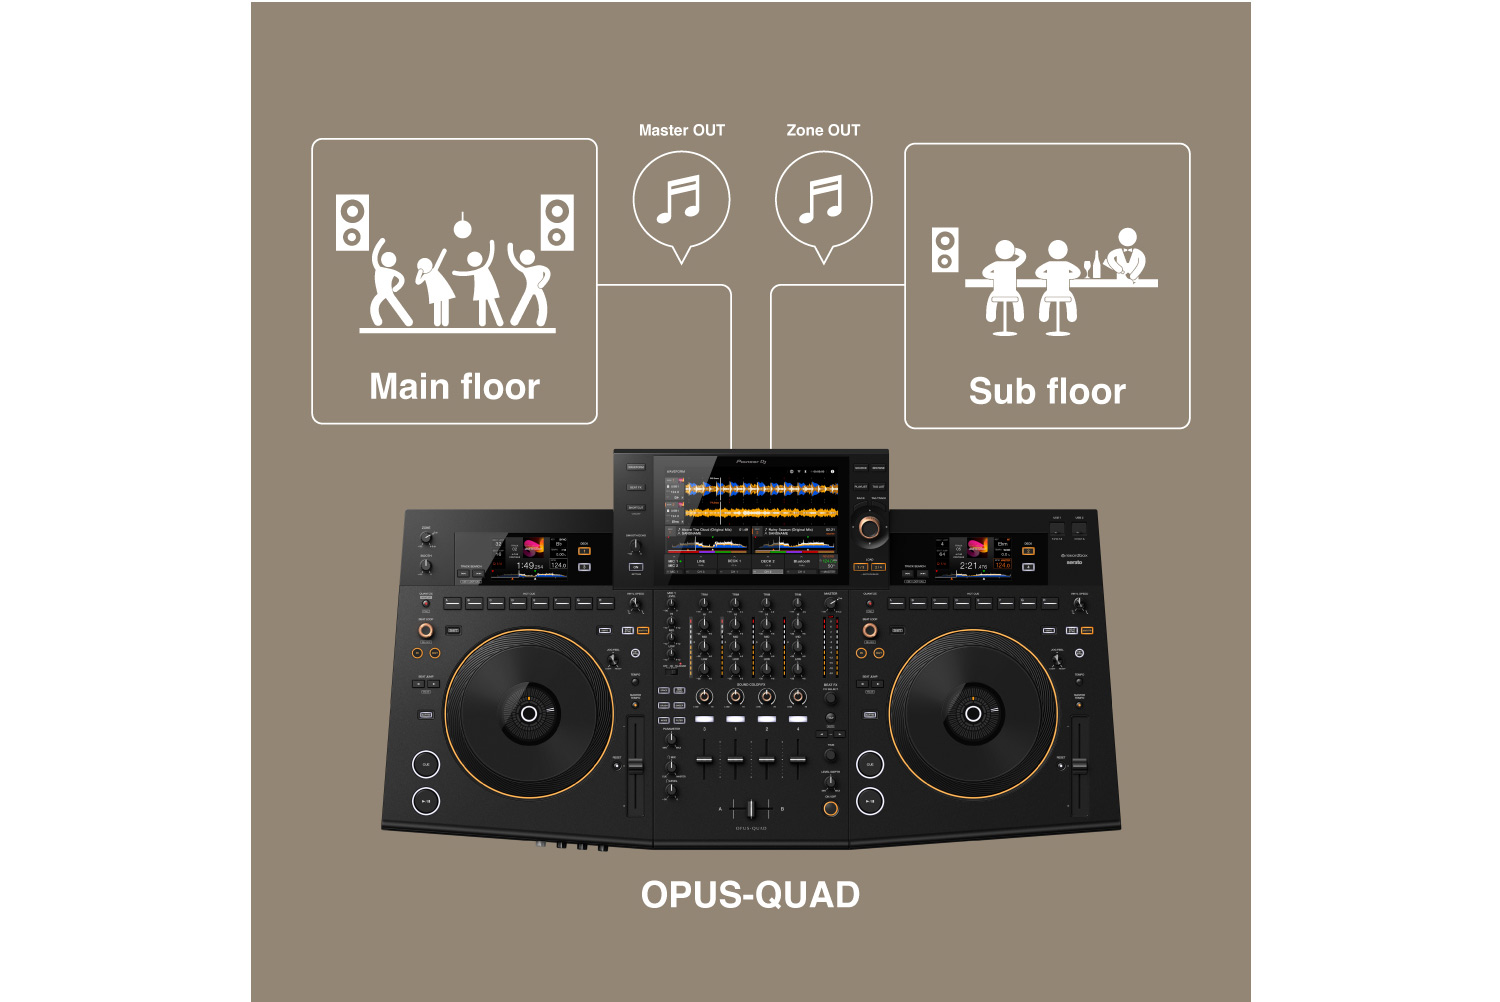 Pioneer DJ OPUS-QUAD